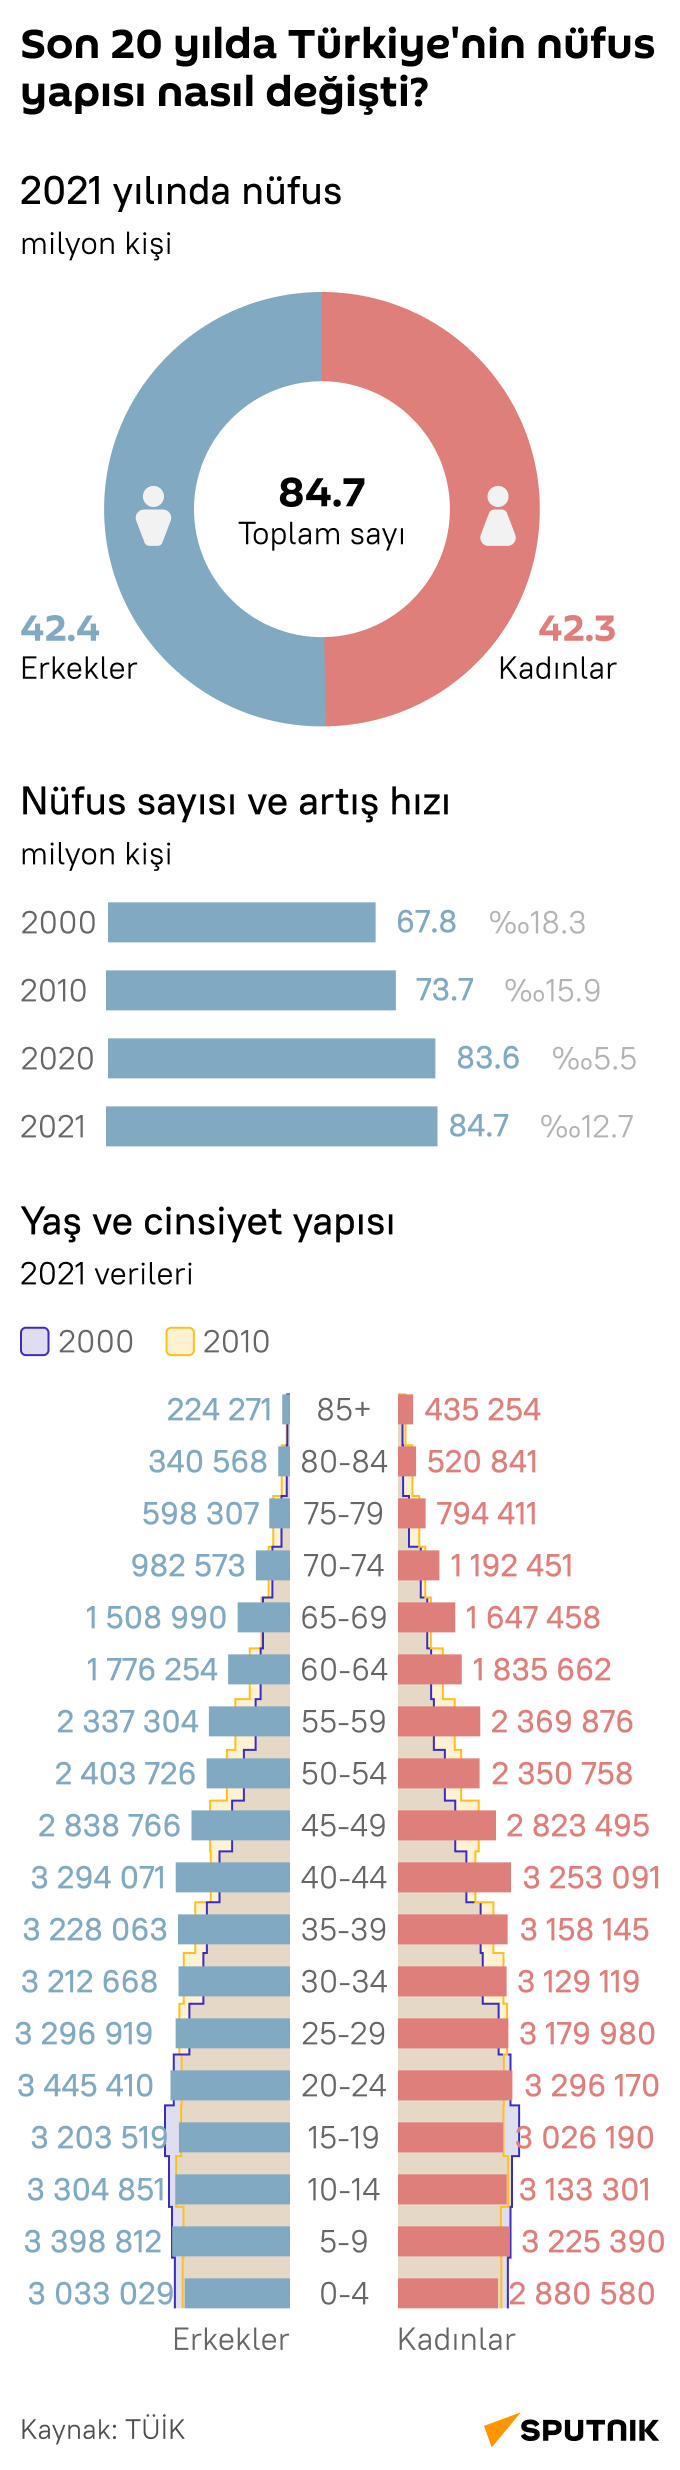 Son 20 yılda Türkiye’nin nüfus yapısı nasıl değişti? - Sputnik Türkiye